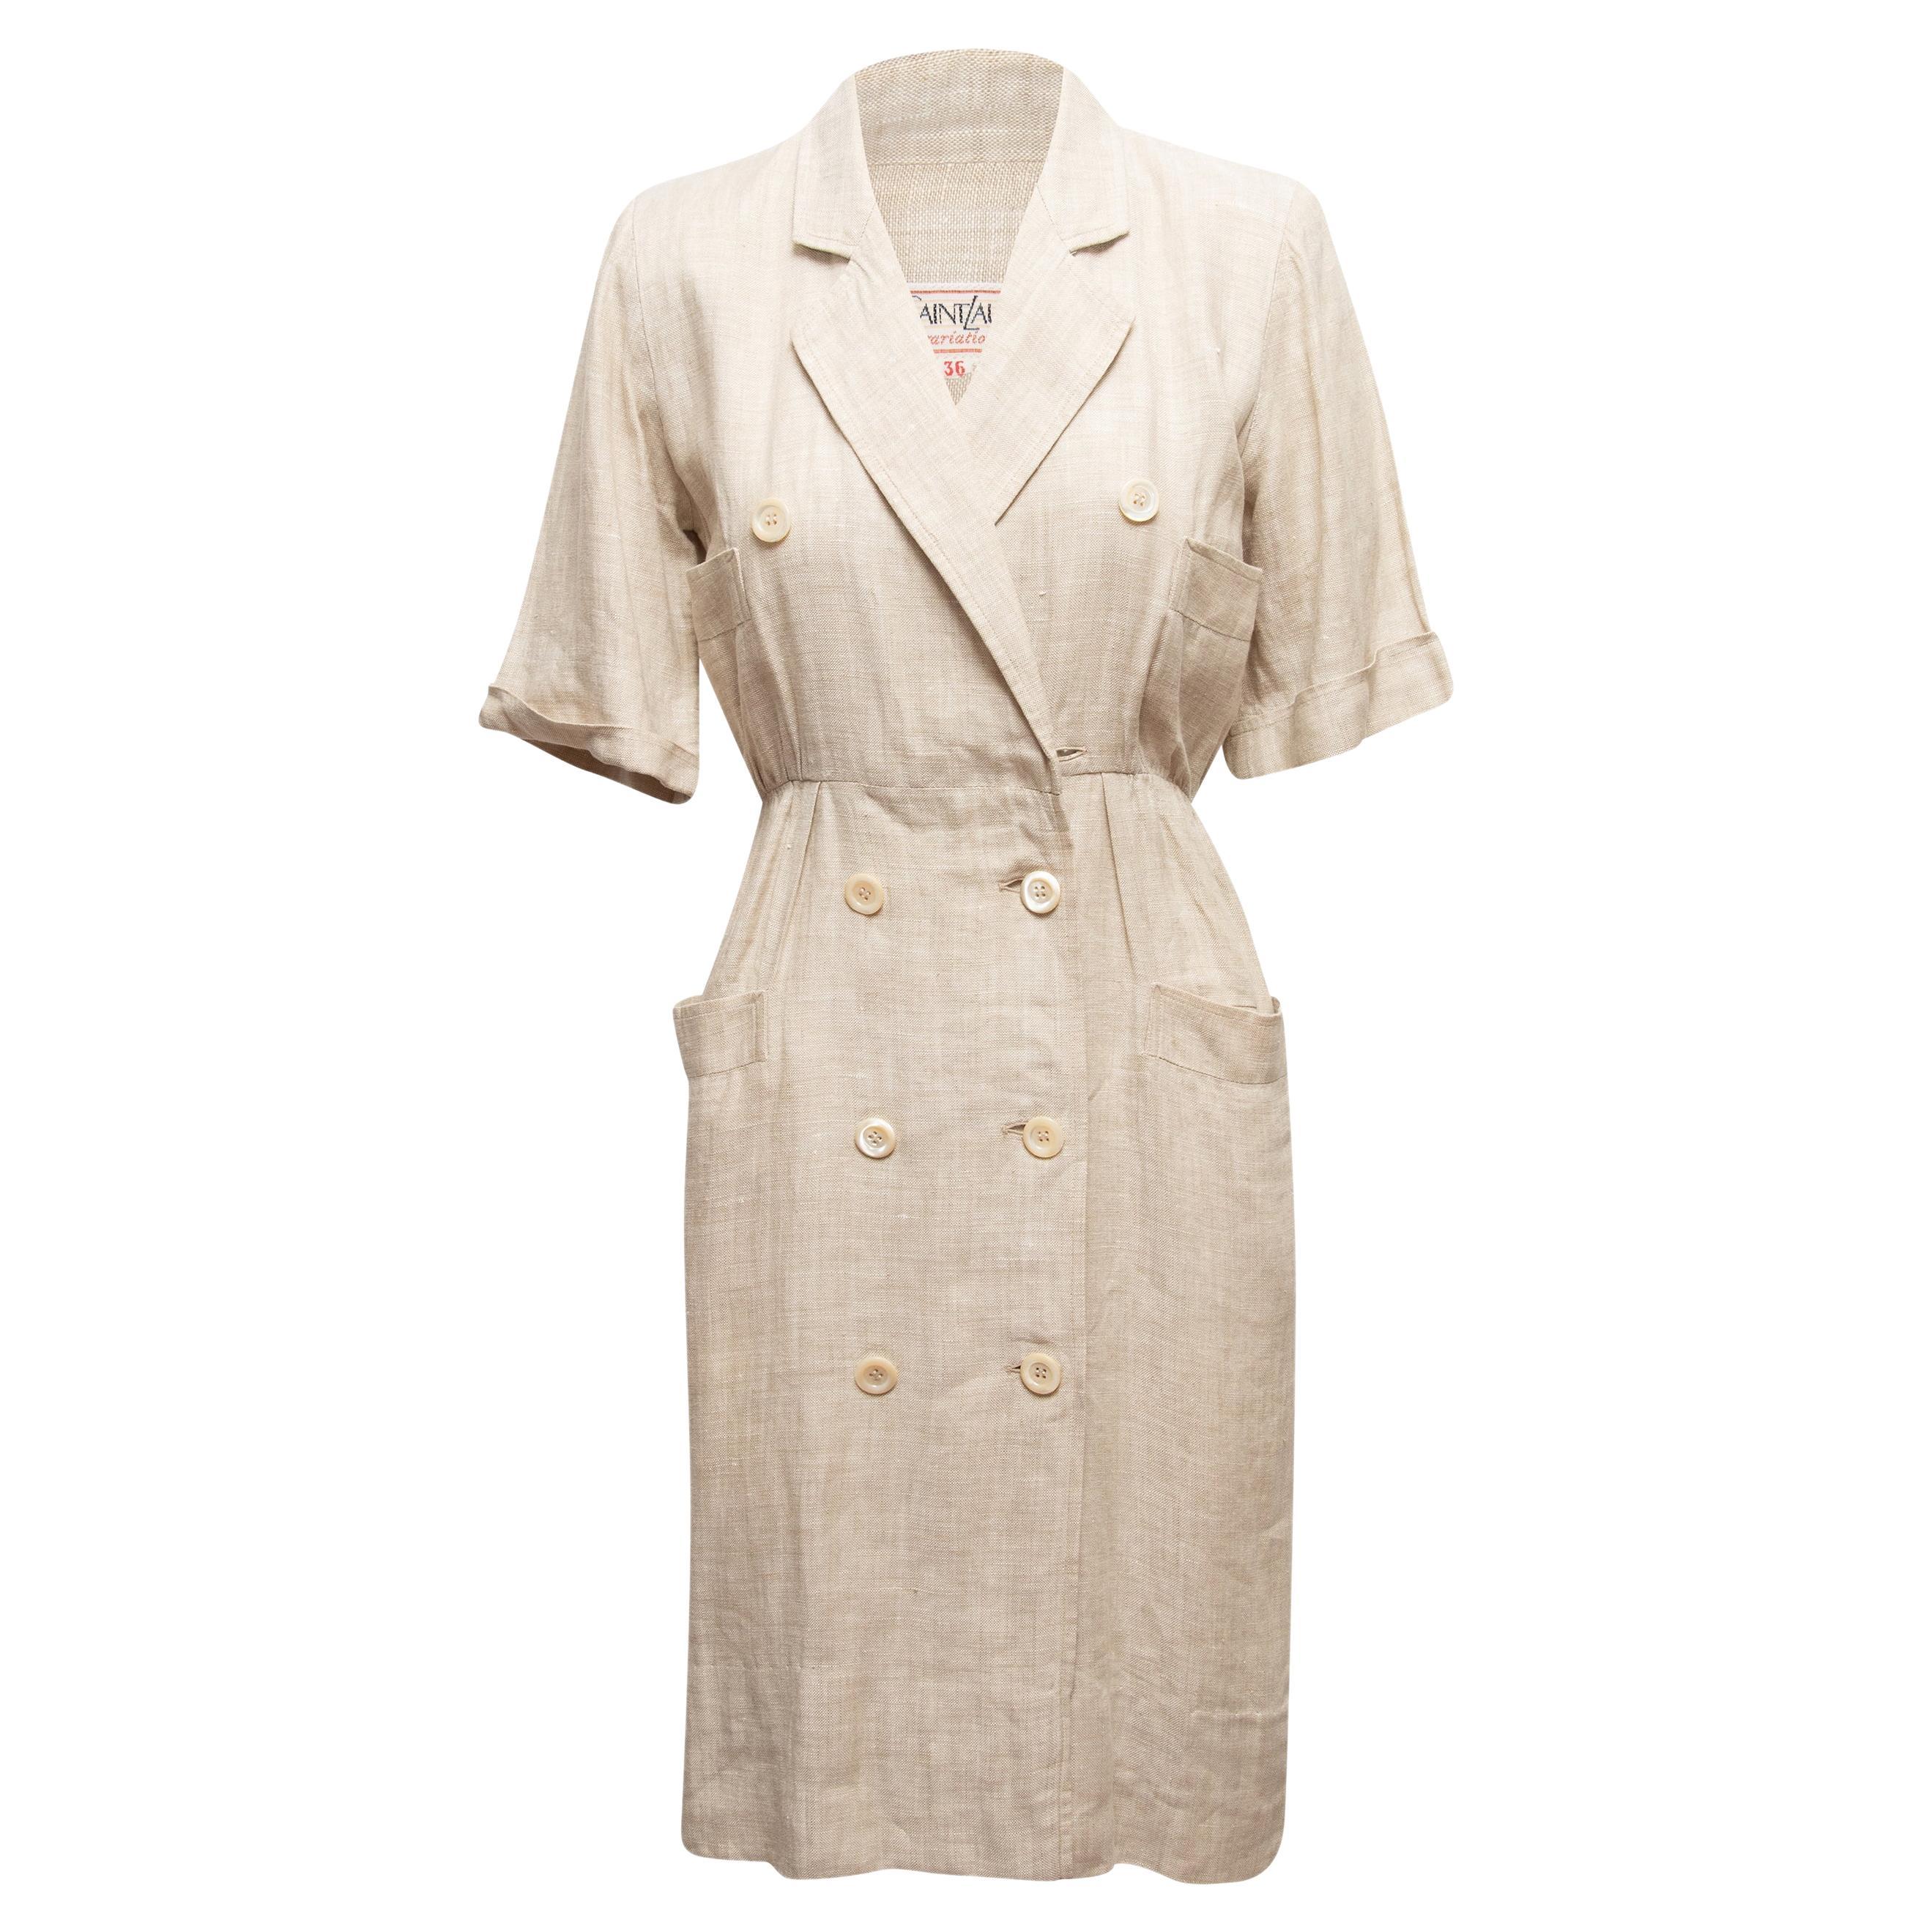 Vintage Beige Yves Saint Laurent Variation 1990s Linen Dress For Sale